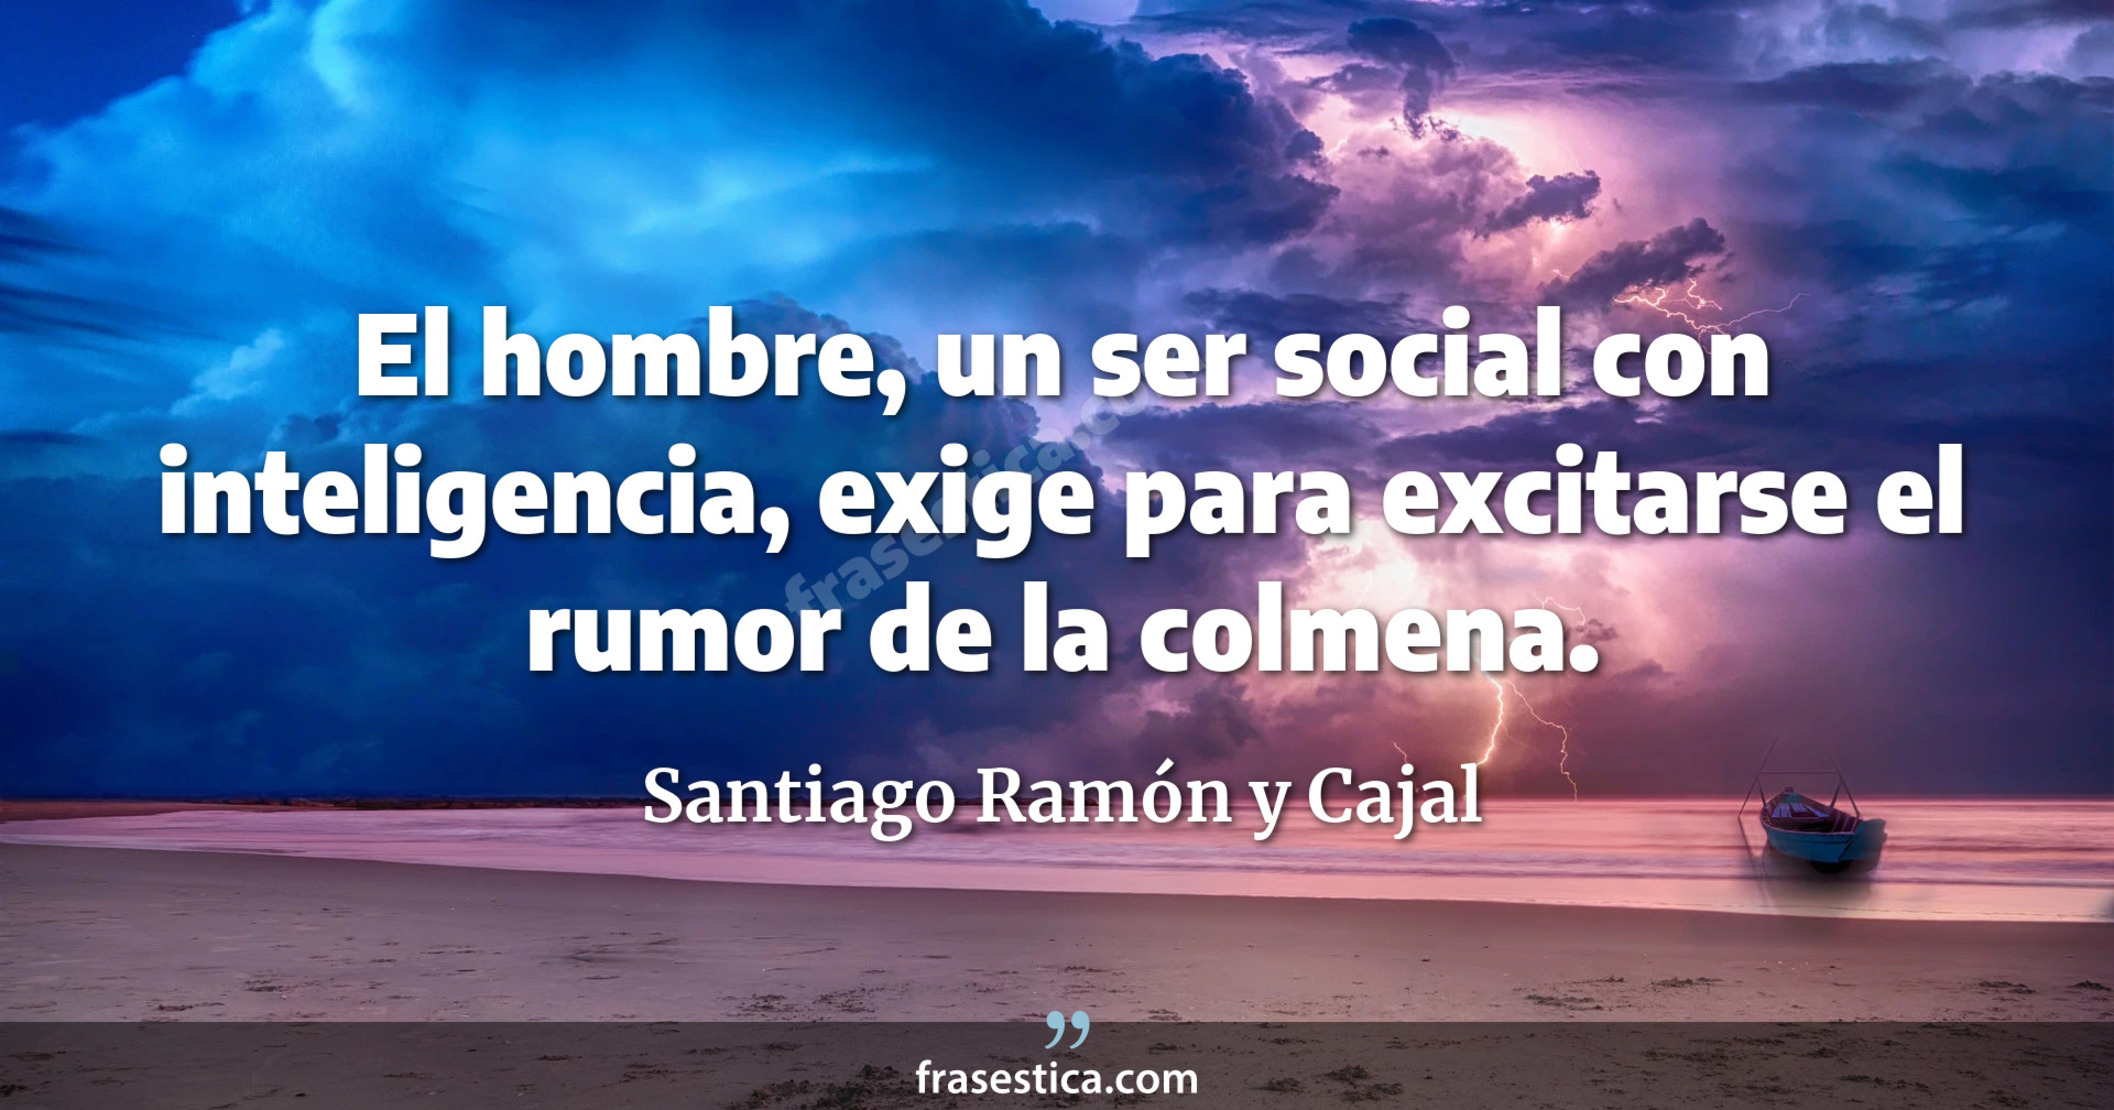 El hombre, un ser social con inteligencia, exige para excitarse el rumor de la colmena. - Santiago Ramón y Cajal